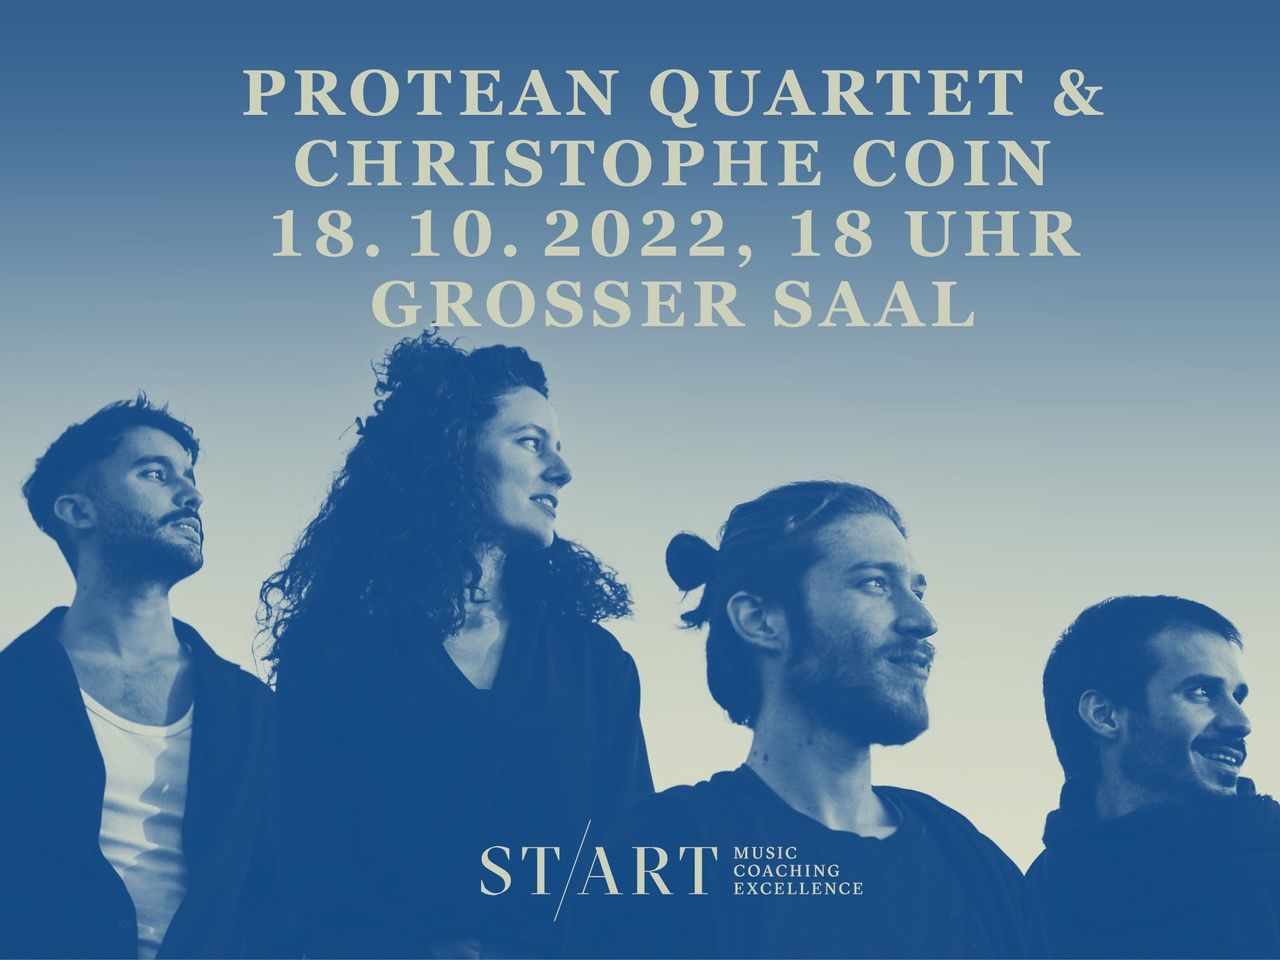 Exzellenzförderprojekt ST/ART mit dem Protean Quartet und Christophe Coin